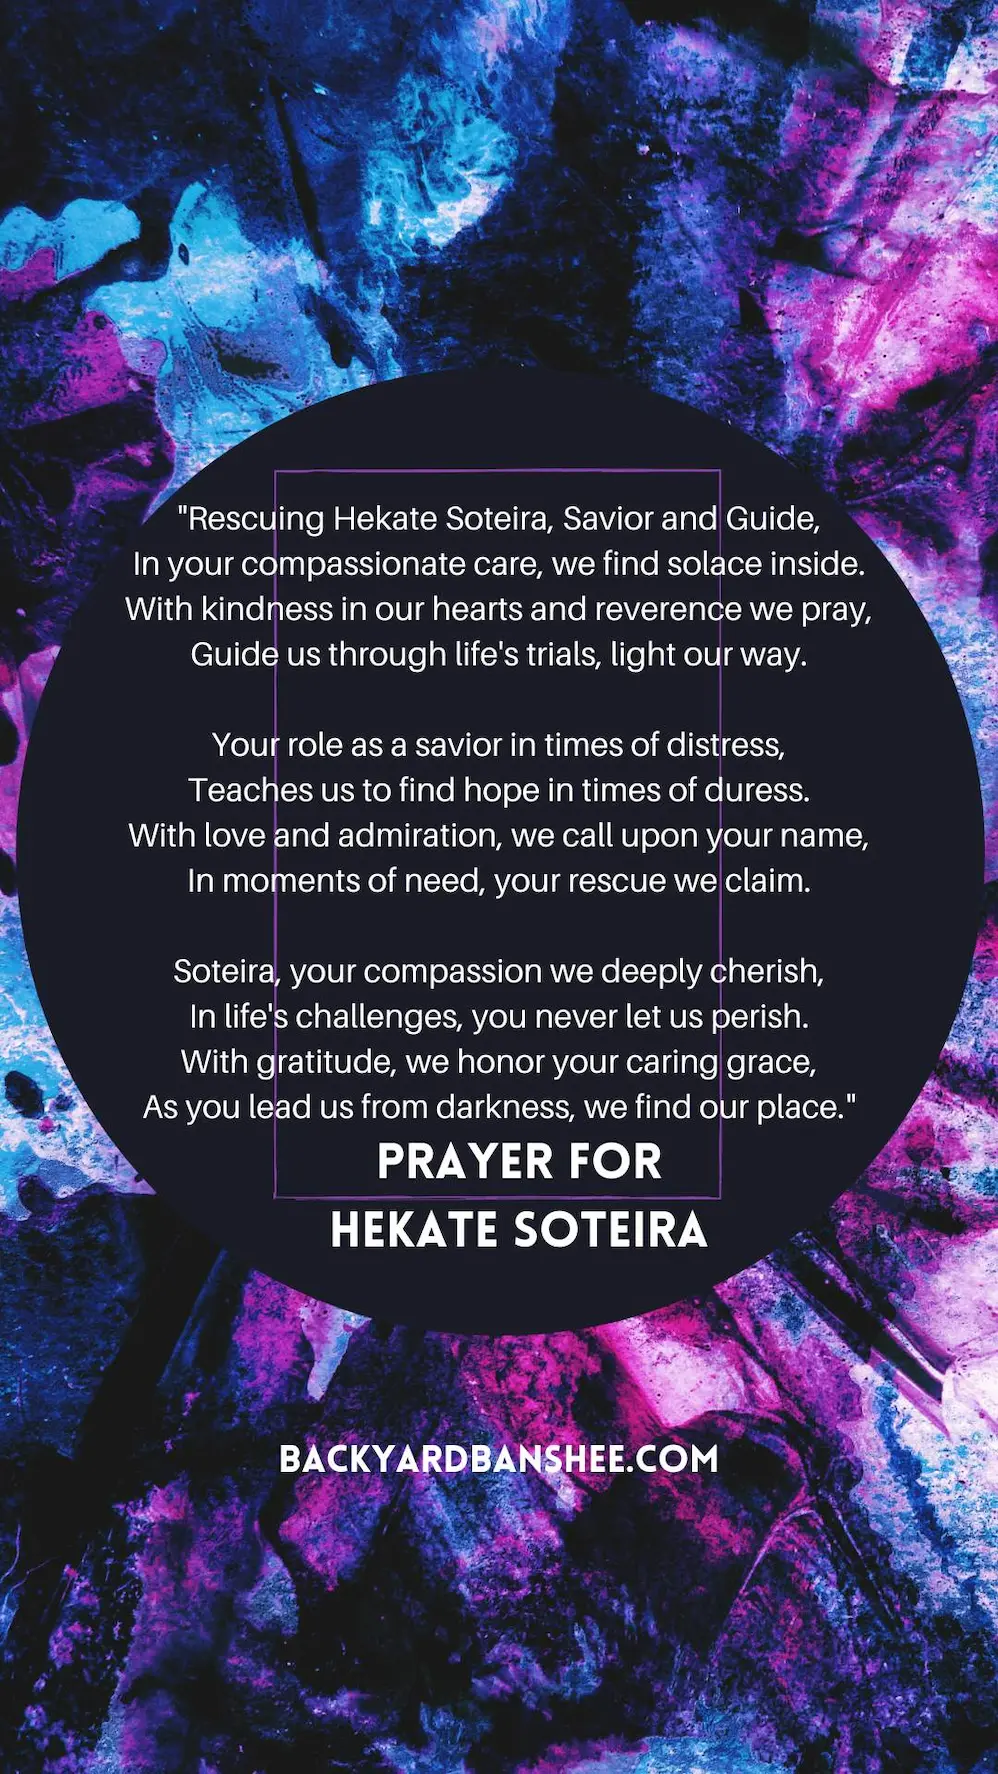 prayer for hecate soteira